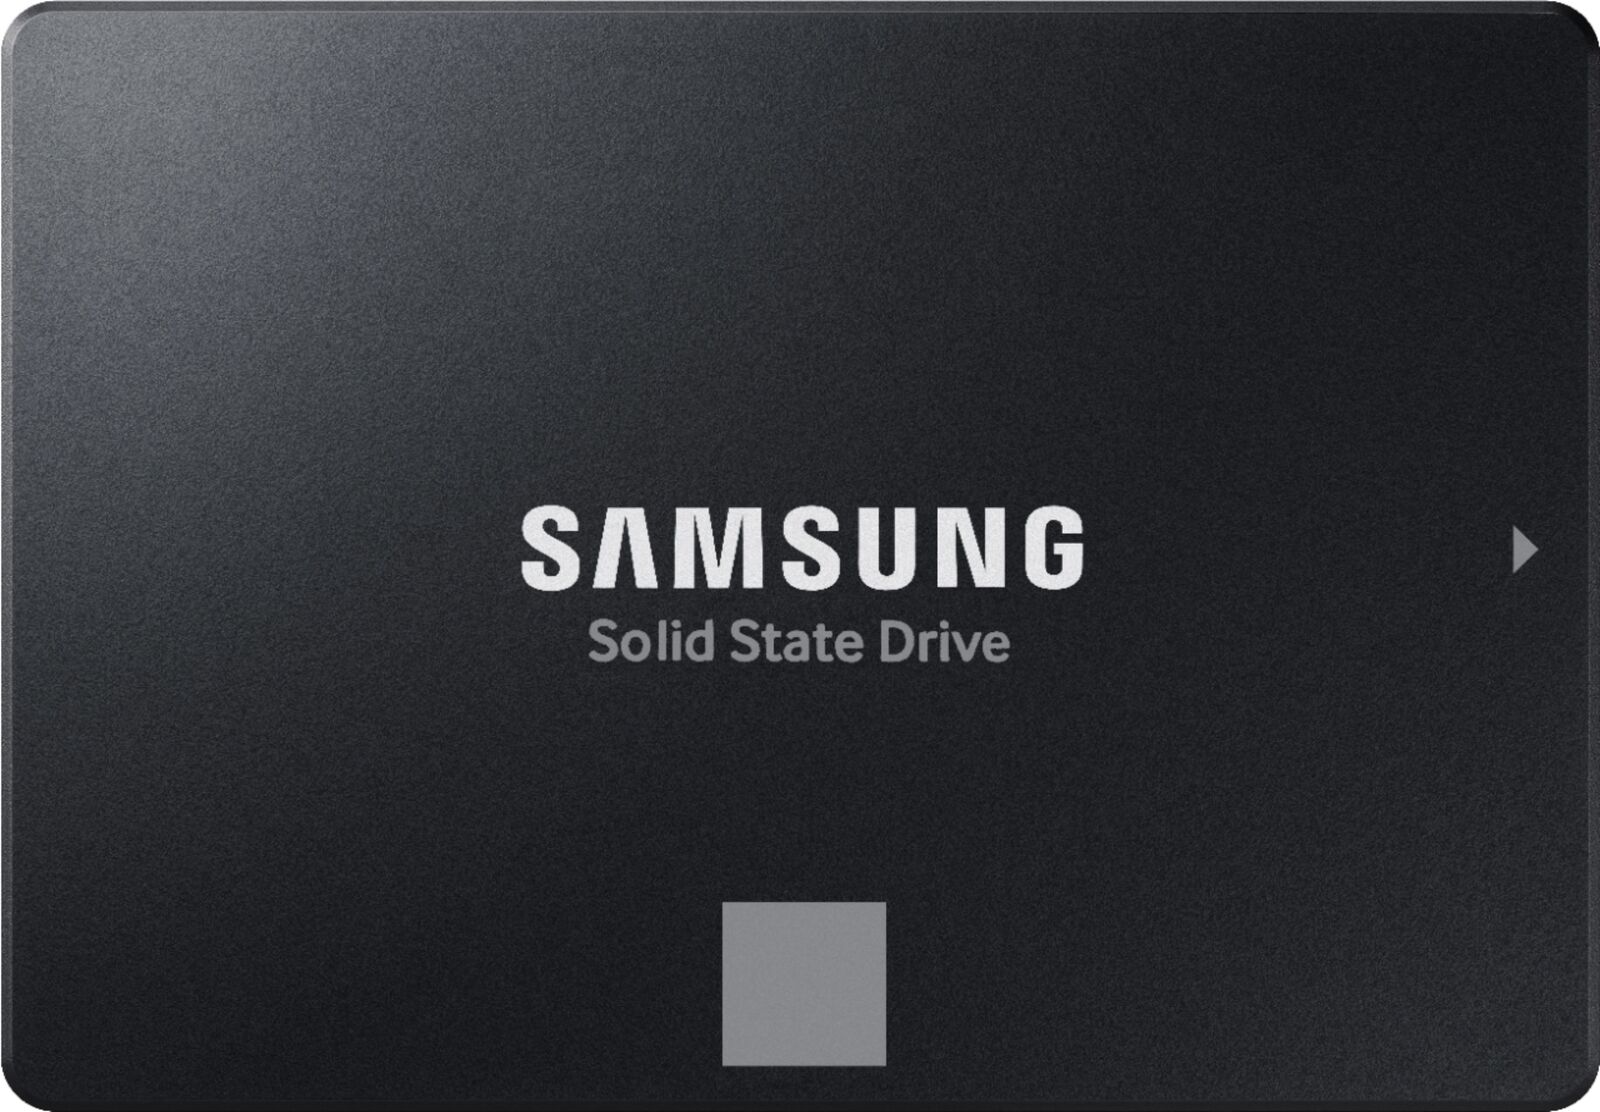 Samsung - 870 EVO 1TB Internal SSD SATA (MZ-77E1T0B/AM) - In Retail Box